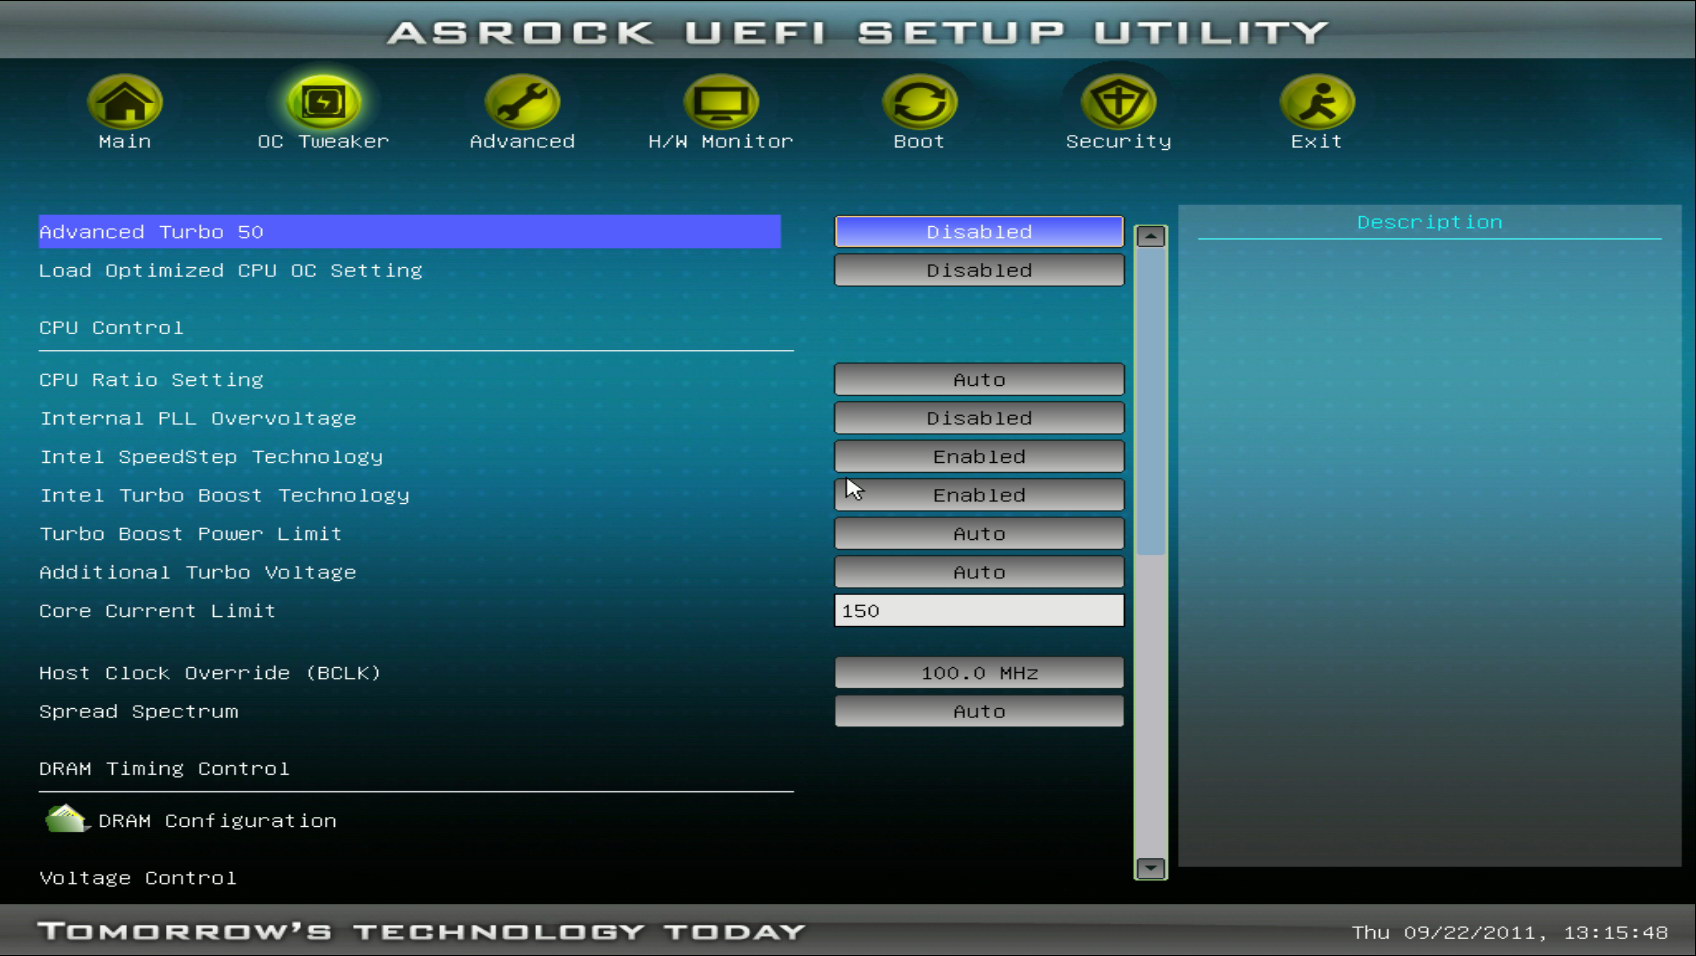 V-podrazdele-Advanced-Turbo-50-vystavlyaetsya-pokazatel-razgona-centralnogo-processora-i-operativnoj-pamyati-PK.jpg